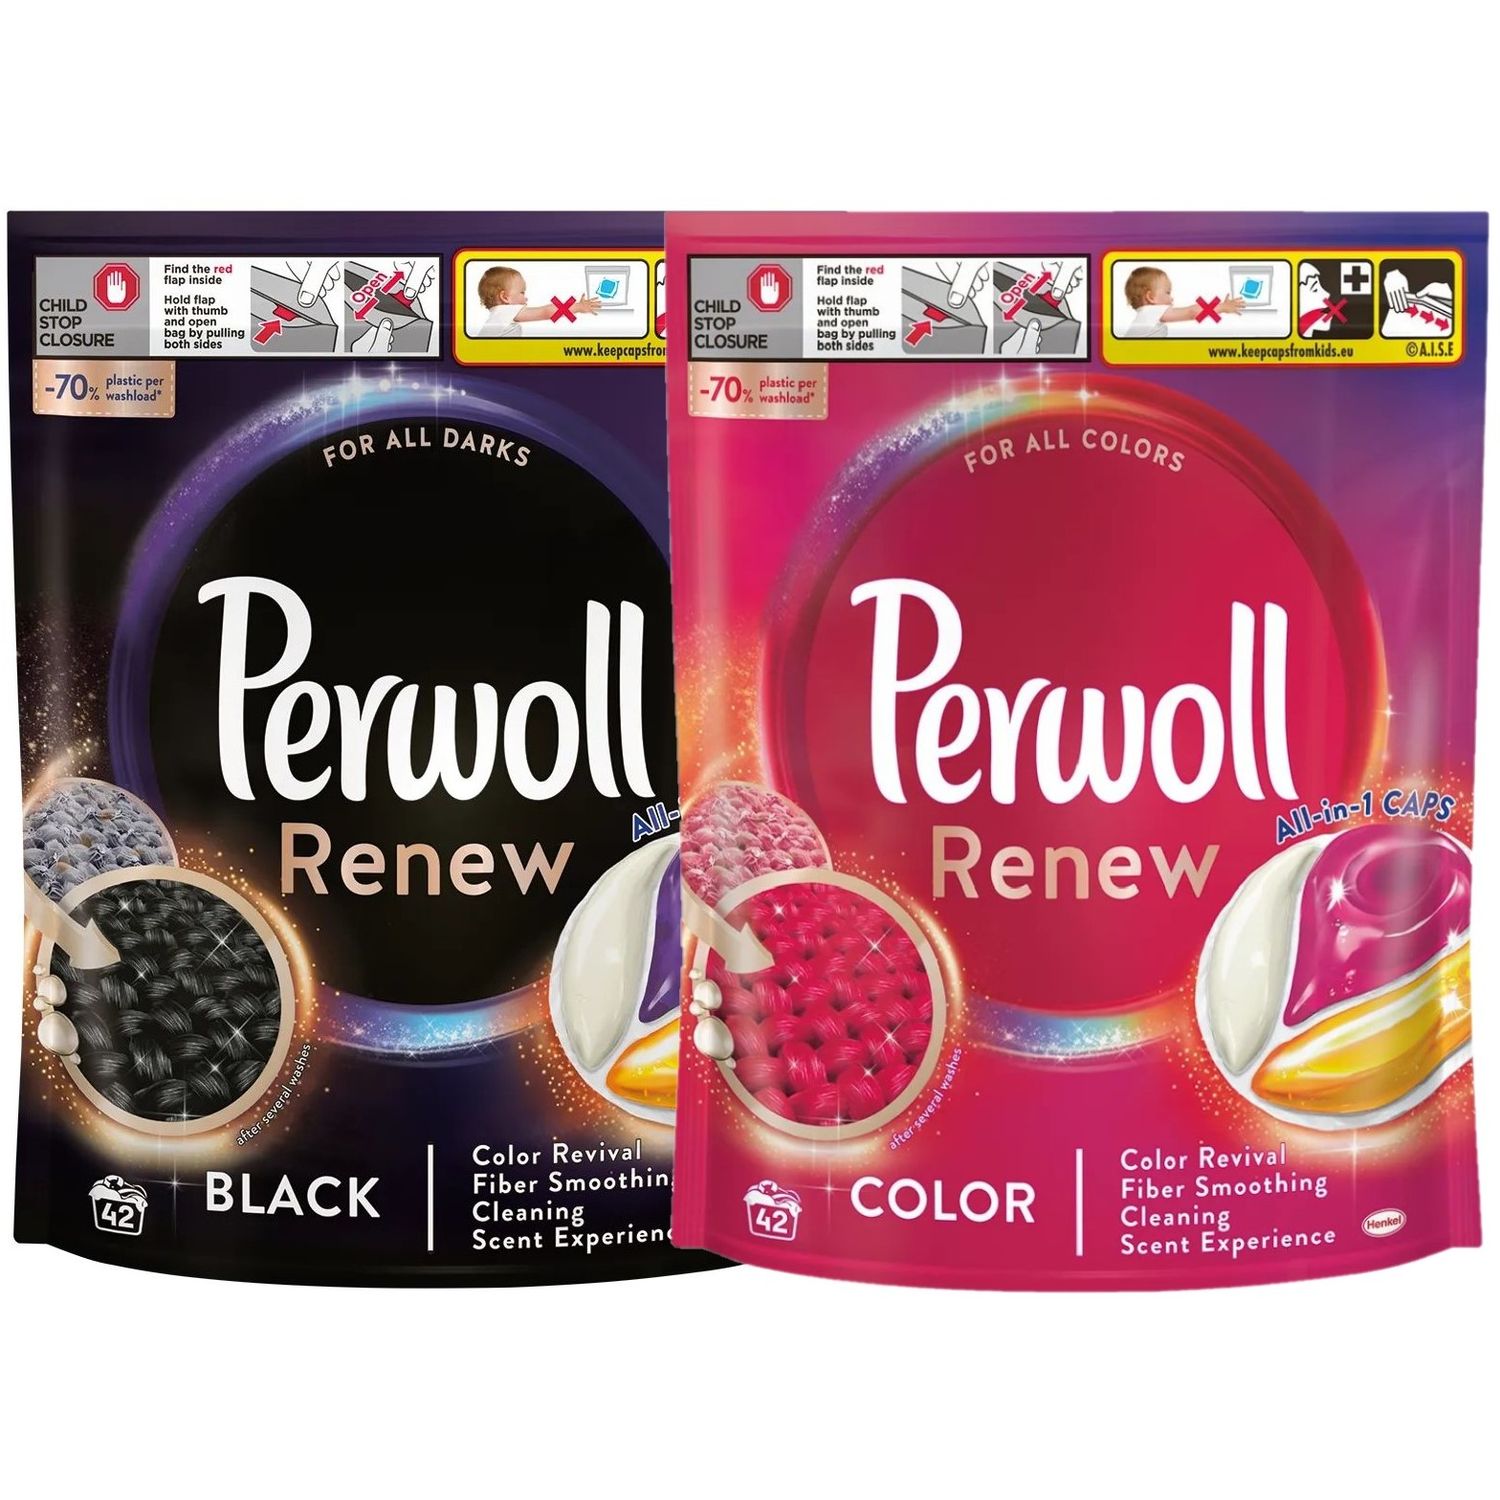 Набор капсул Perwoll Renew: Средство для деликатной стирки Perwoll, для цветных вещей, 42 шт. + Средство для деликатной стирки Perwoll, для темных и черных вещей, 42 шт. - фото 1